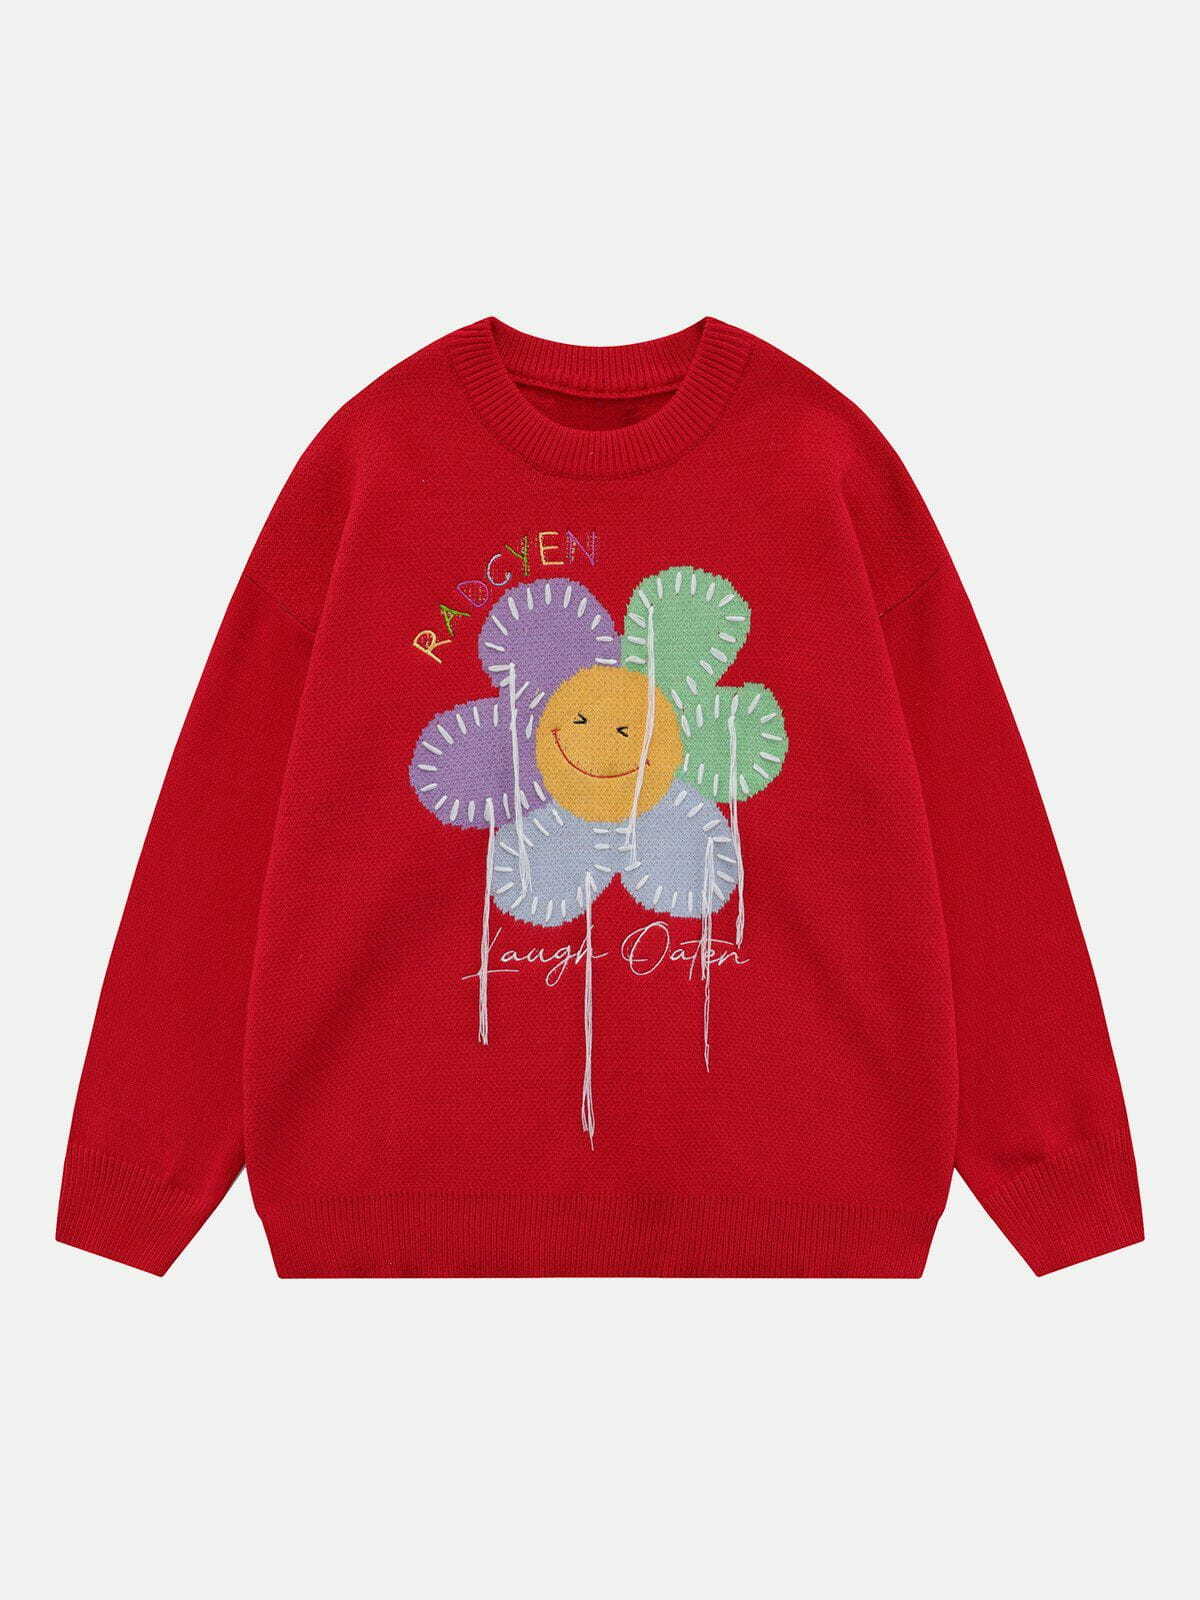 graphic sunflower sweater retro streetwear statement 8904